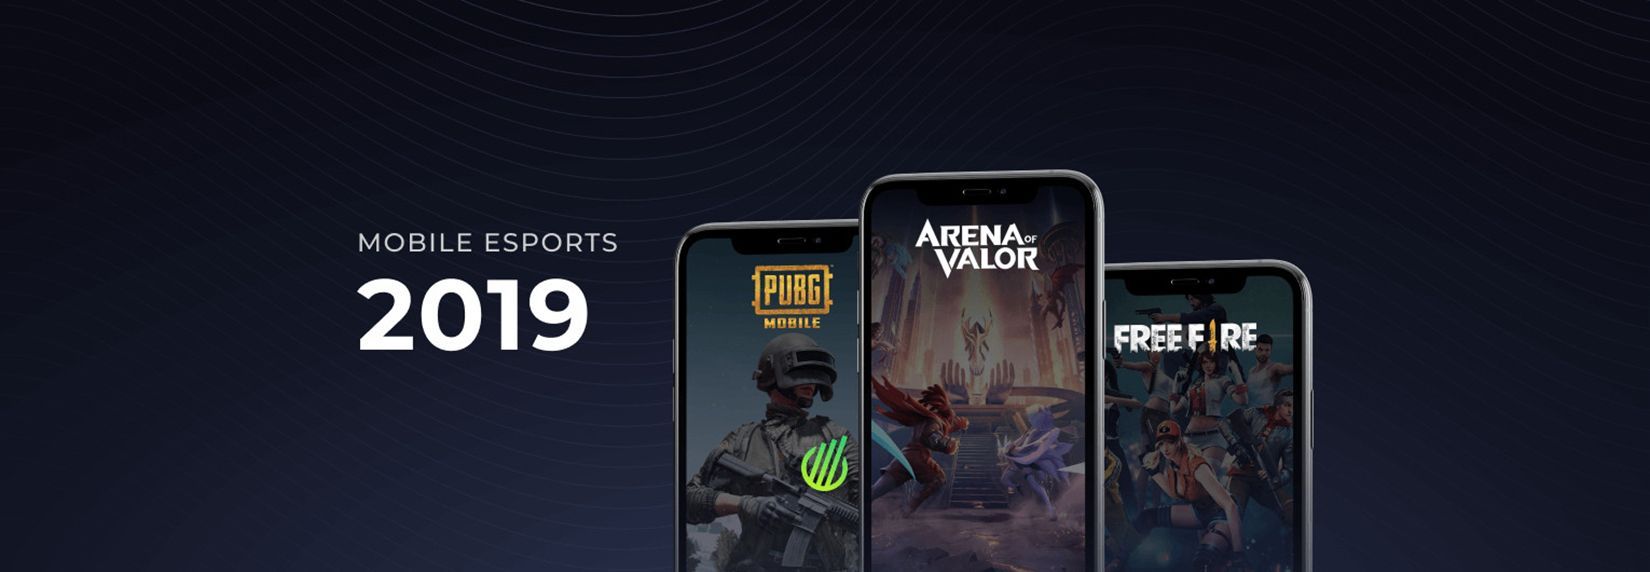 Liên Quân Mobile đạt top 1 Game Mobile Esports có lượng người theo dõi lớn nhất năm 2019